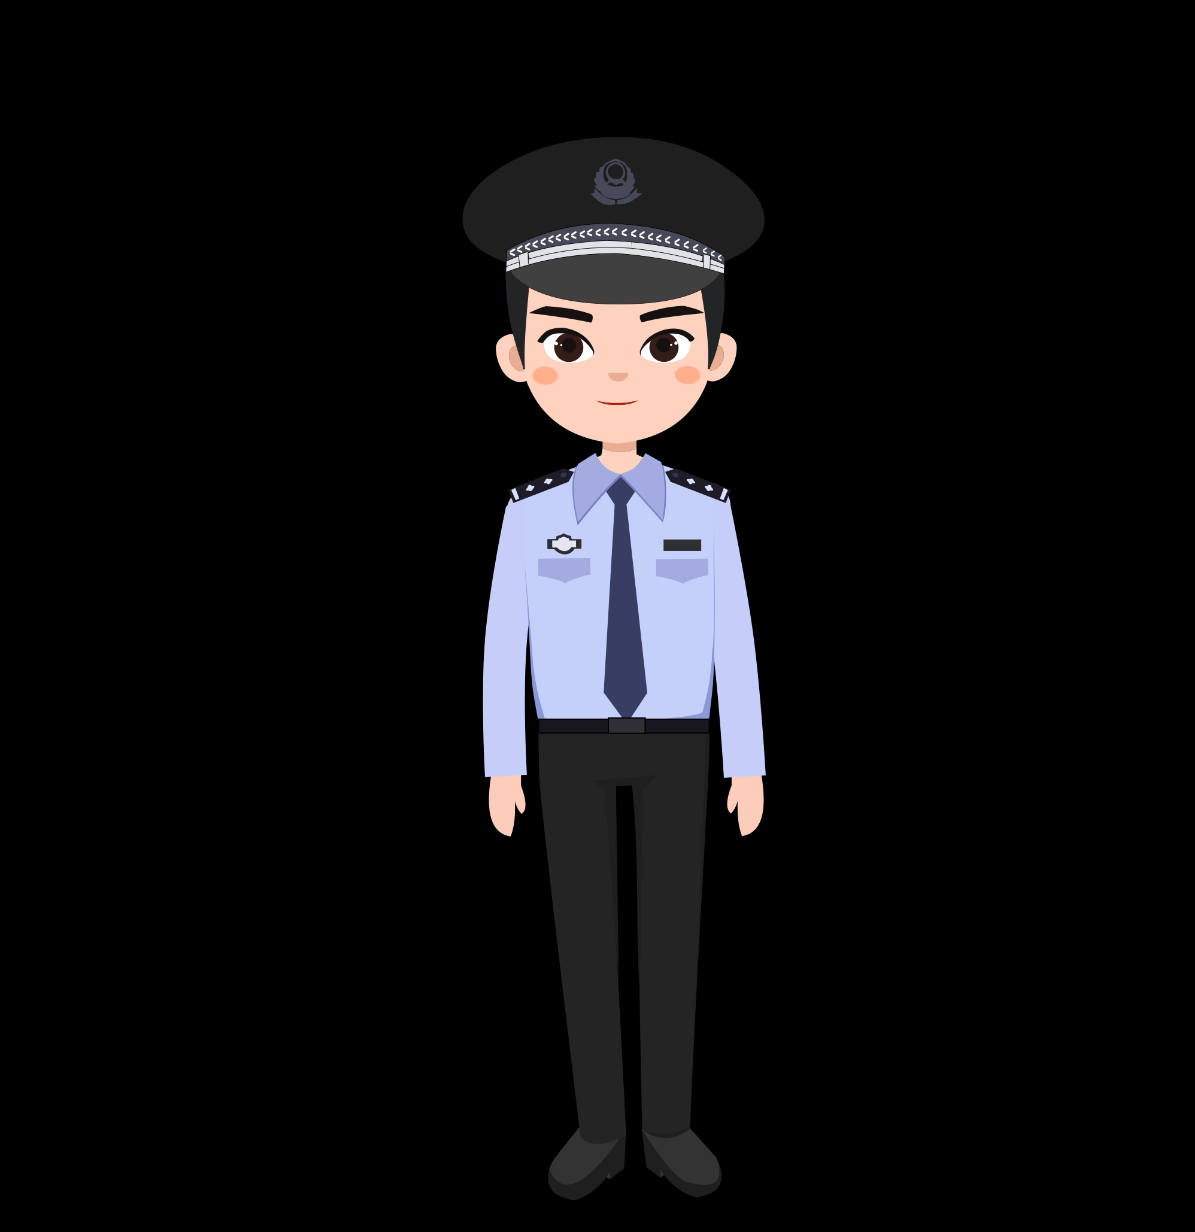 最新MG动画人物角色讲解公安城管警察交警